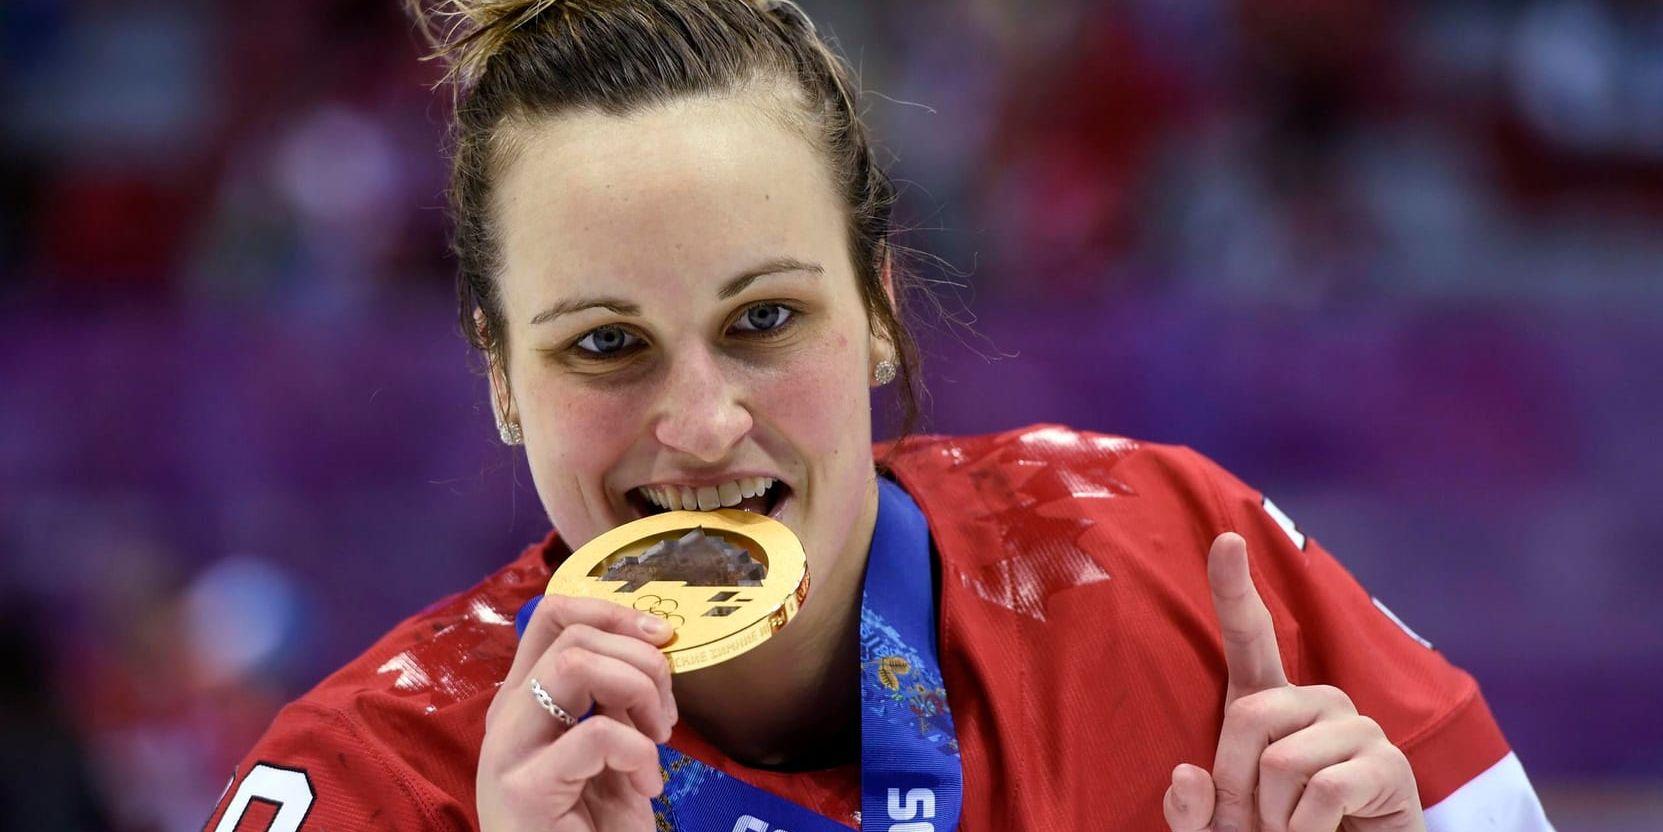 Marie-Philip Poulin har avgjort två raka OS-finaler i ishockey. Får hon smaka på guld även i Pyeongchang?